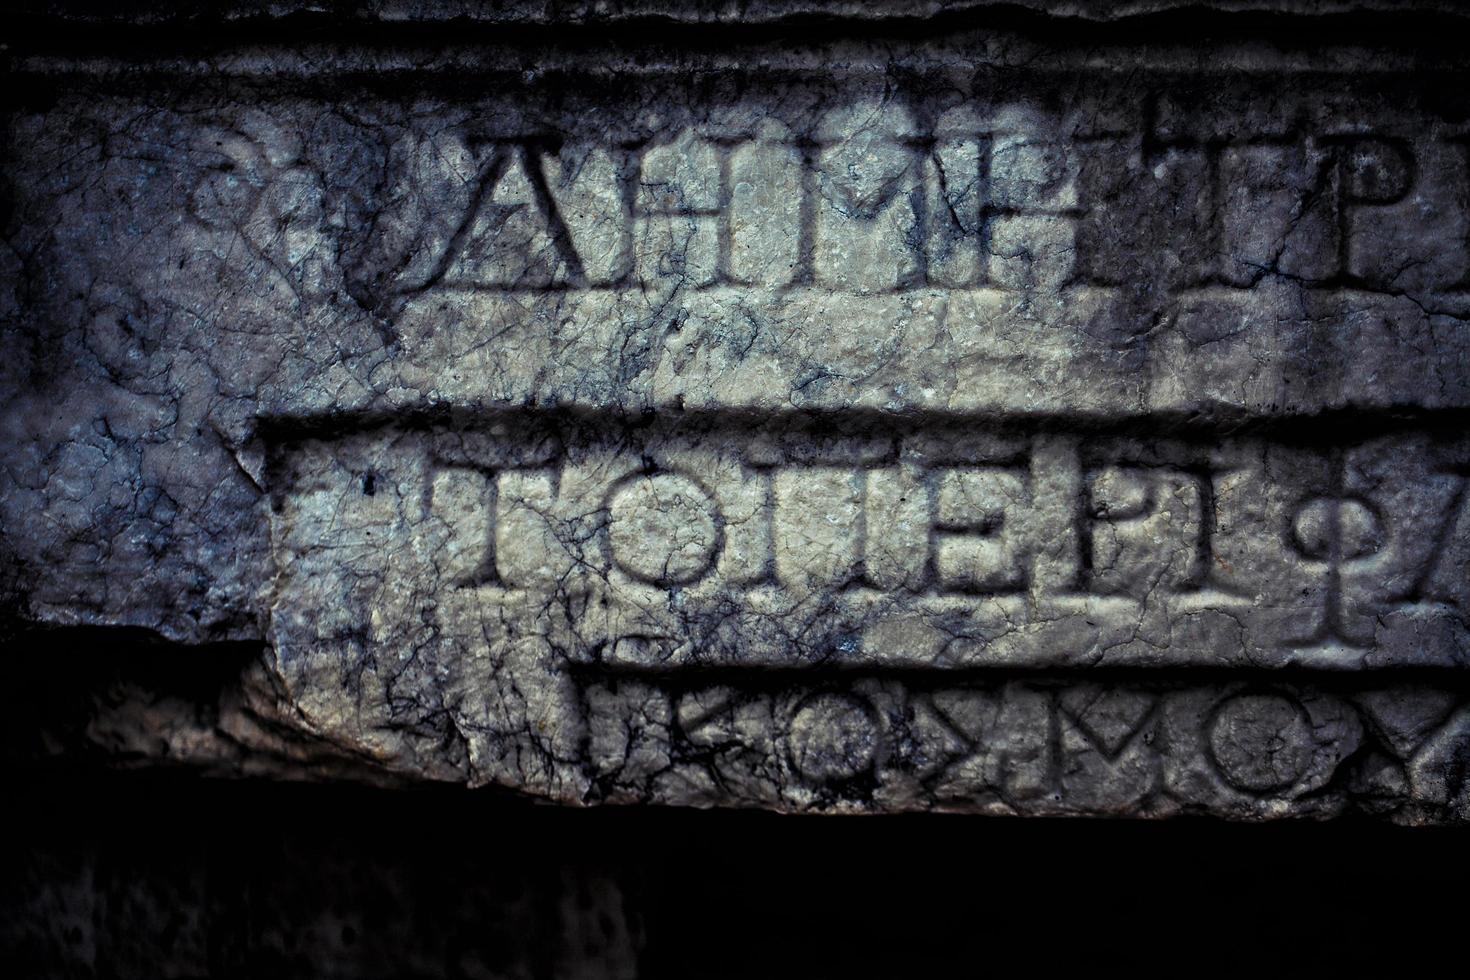 Épigraphe historique de l'âge antique sur la pierre de tablette de marbre photo